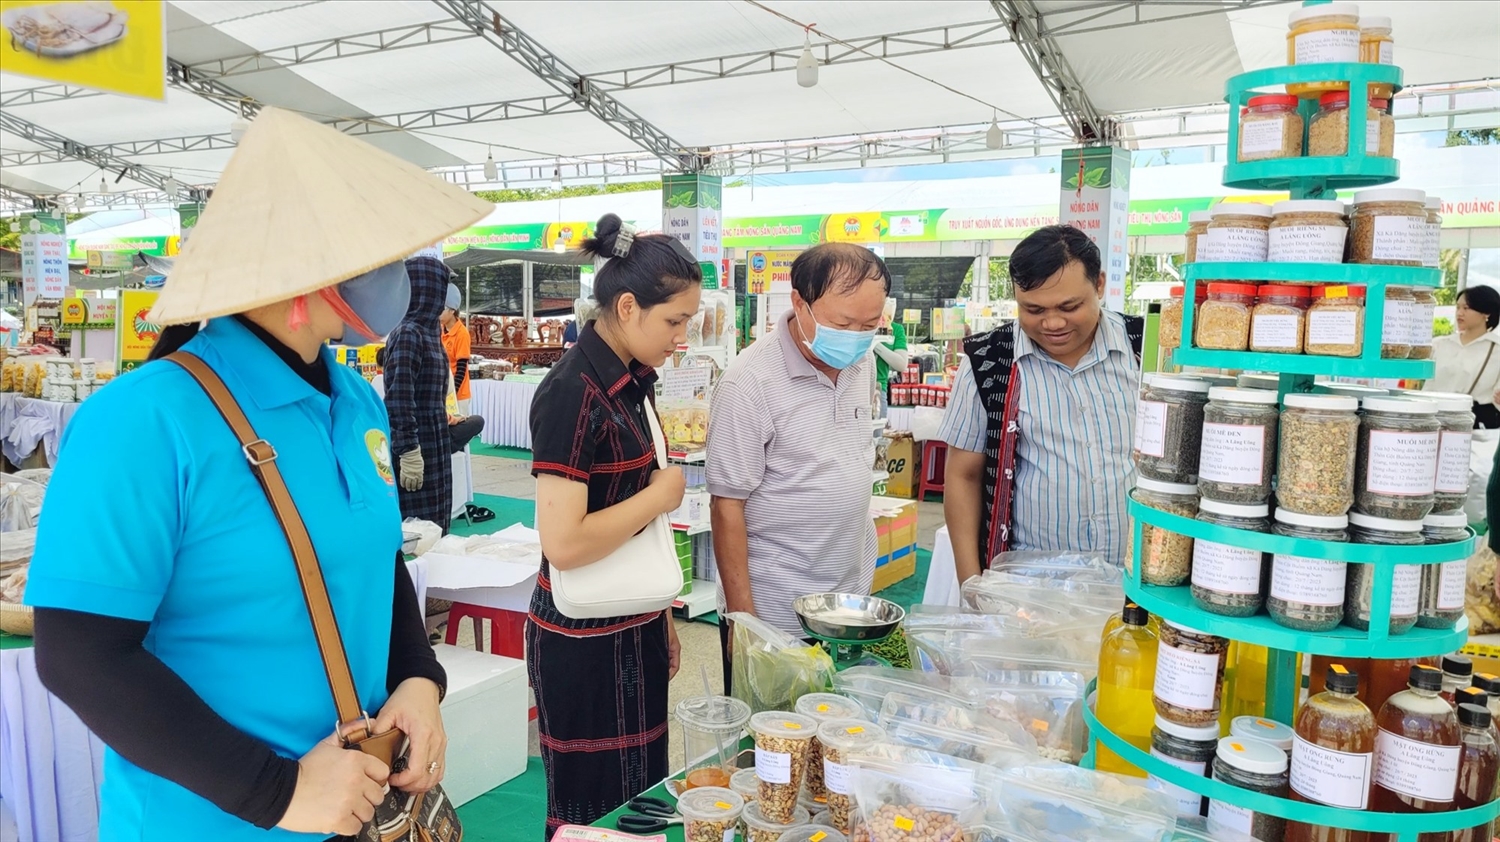 Tỉnh Quang Nam ưu tiên tổ chức hội chợ, triển lãm sản phẩm đặc trưng, sản phẩm miền núi